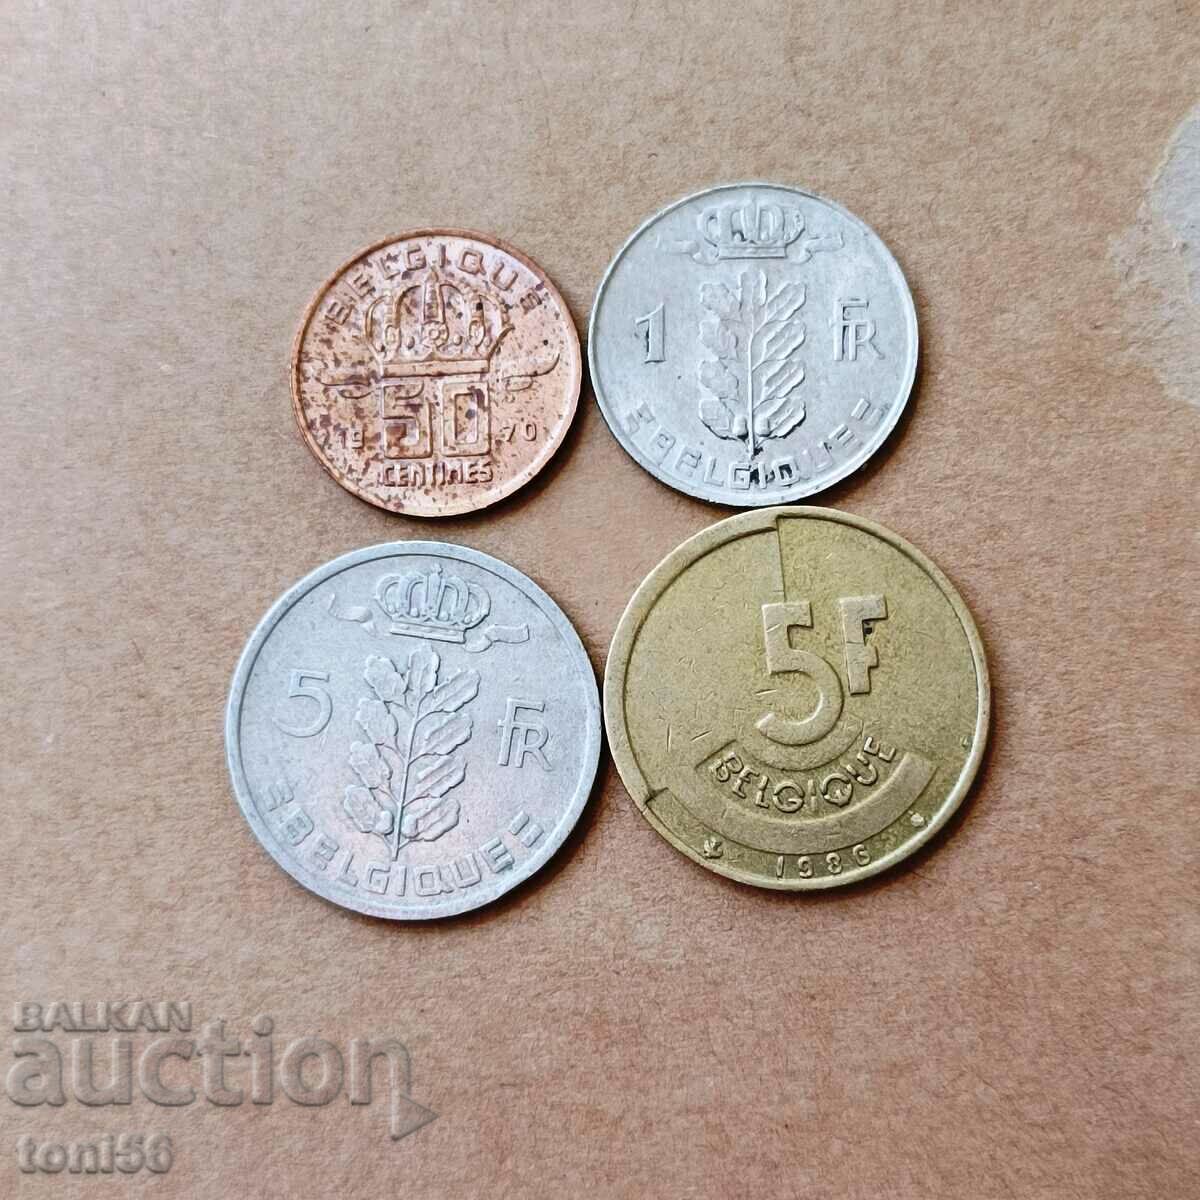 Σετ Belgium 50 centimes, 1, 5 + 5 frans 1950/86 γαλλική επιγραφή